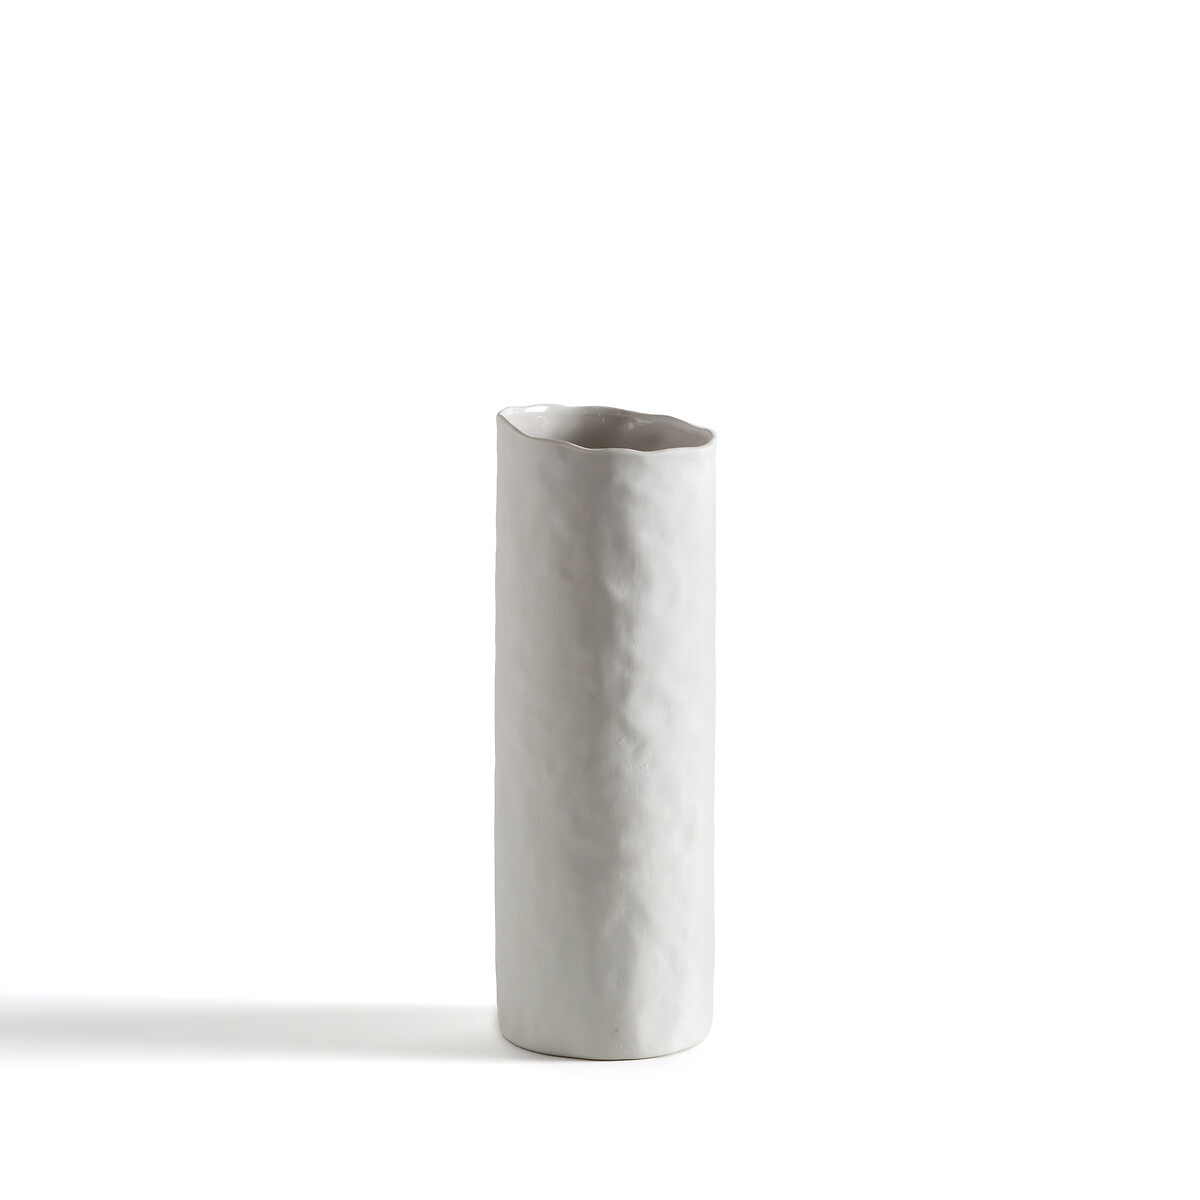 Ваза Из керамики В245 см Liso единый размер белый